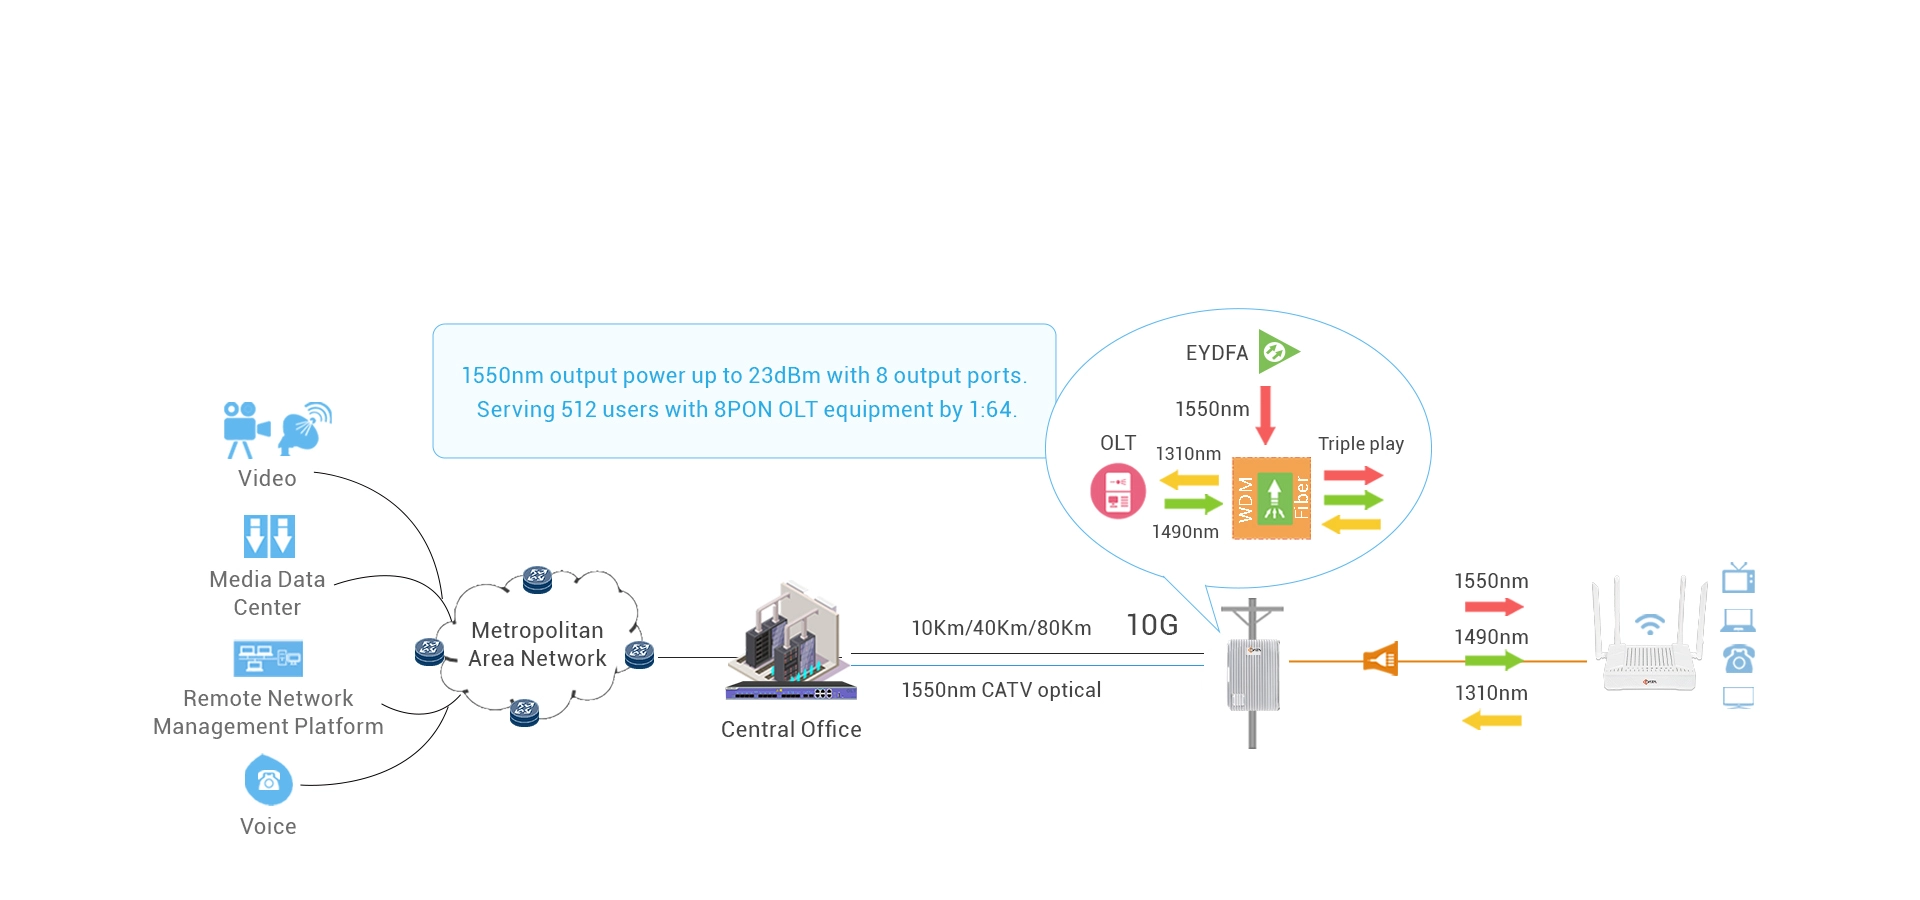 Интегрированный EYDFA для CATV MSO 1550nm RF Overlay Solution (опционально)